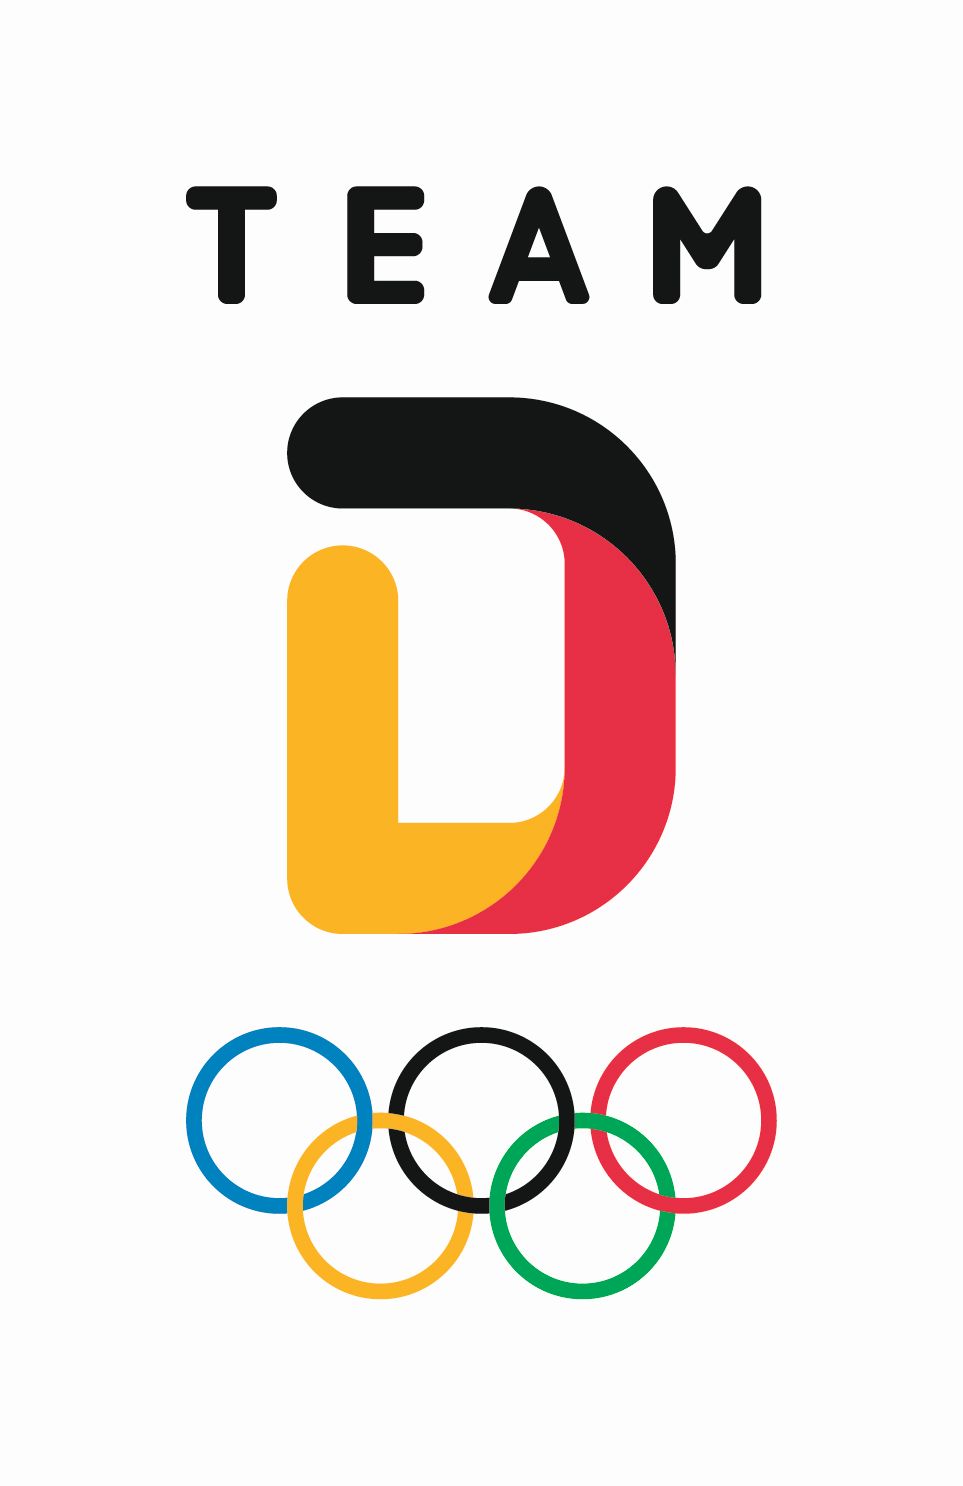 Team deutschland olympia2018